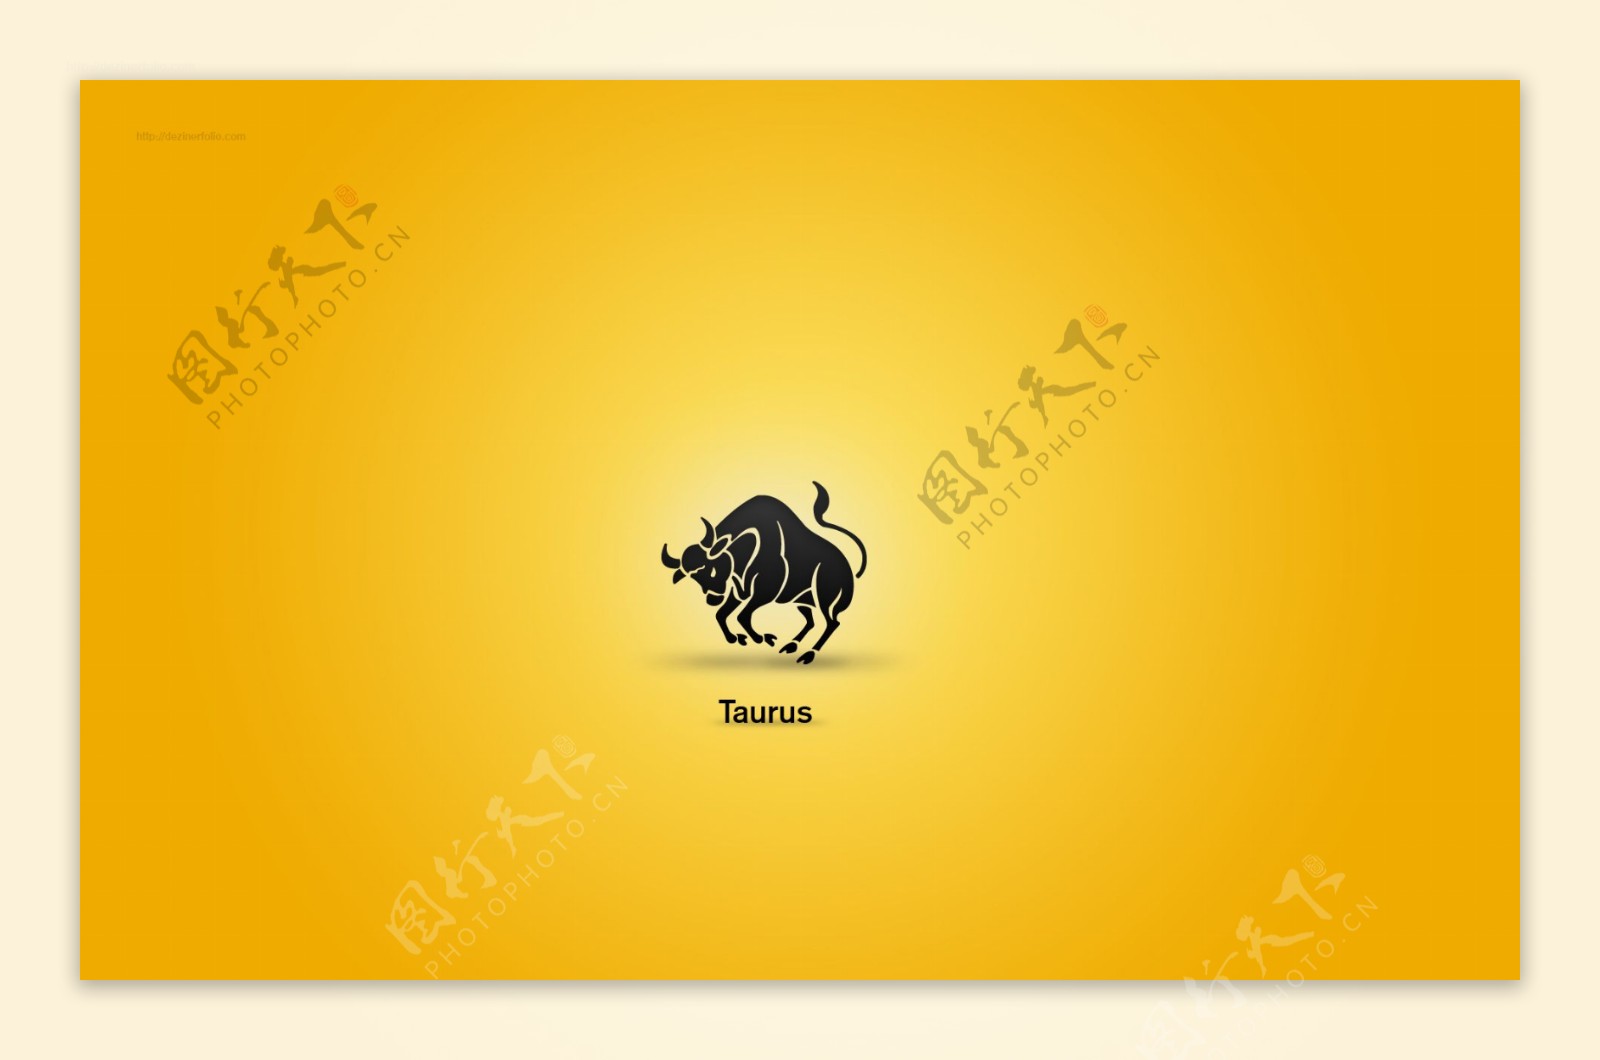 12星座黄色背景壁纸素材taurus图片